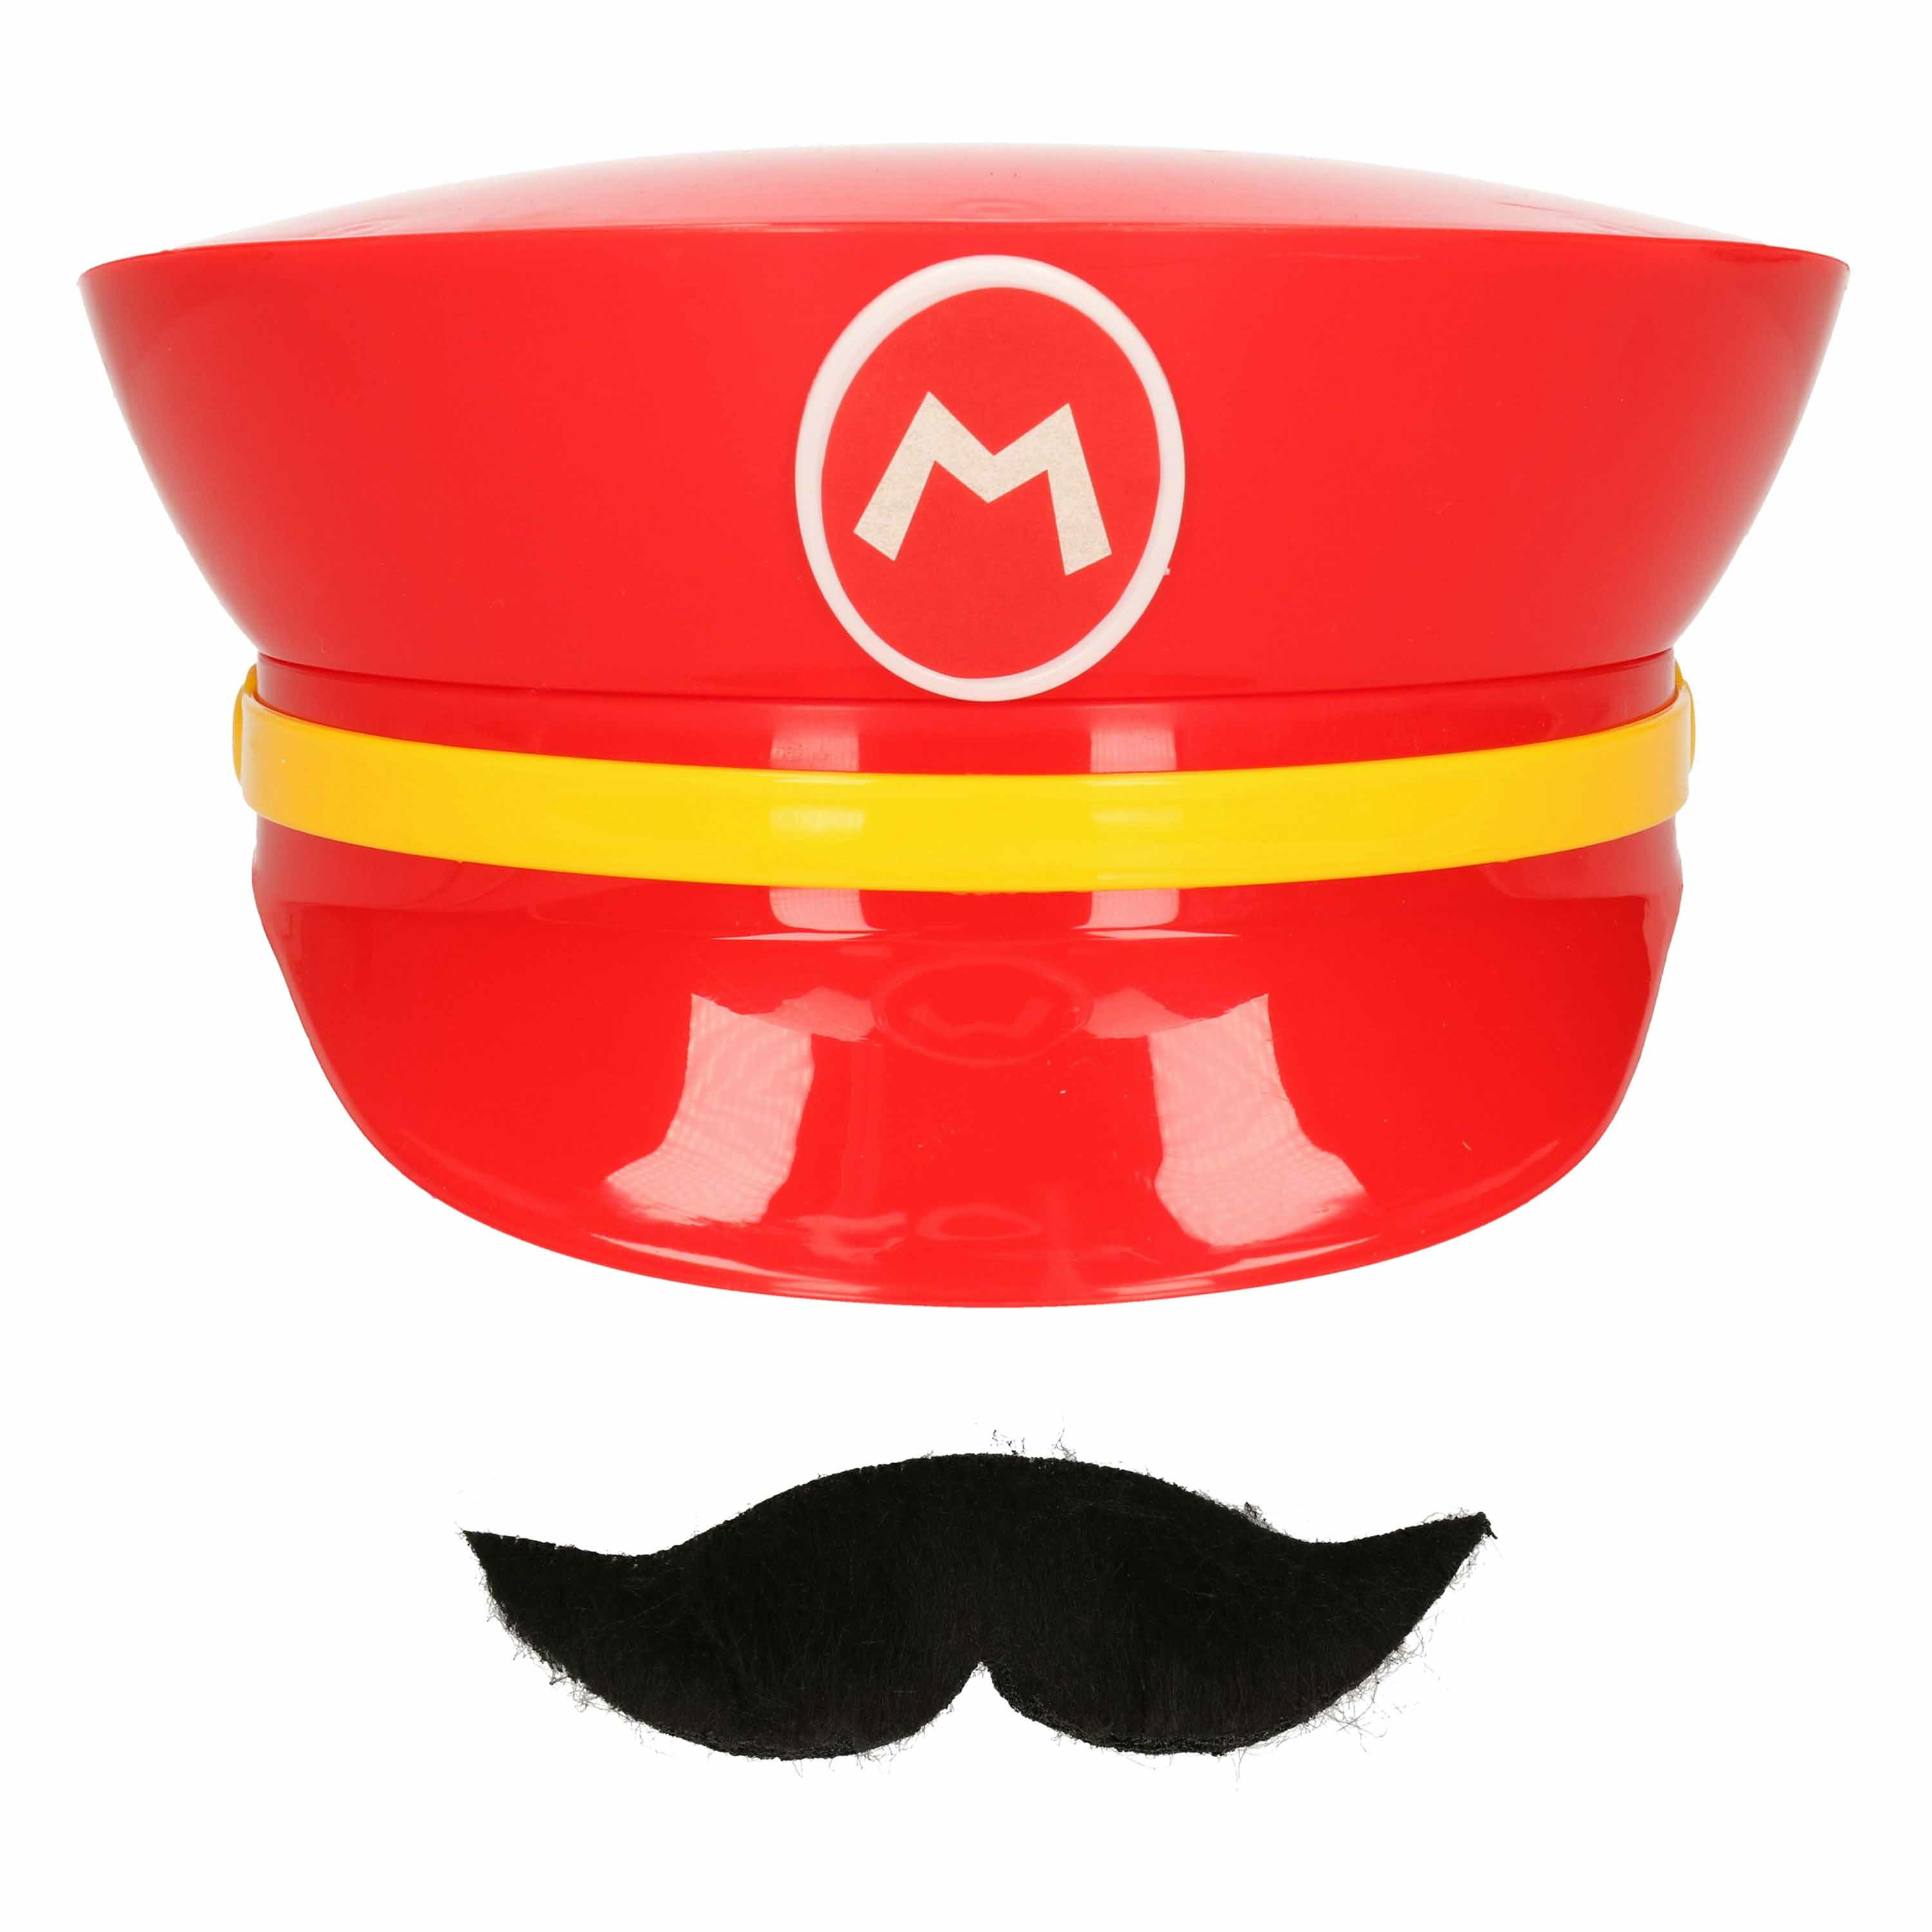 Afbeelding van Game verkleed set pet en snor - loodgieter Mario - rood - unisex - carnaval/themafeest outfit